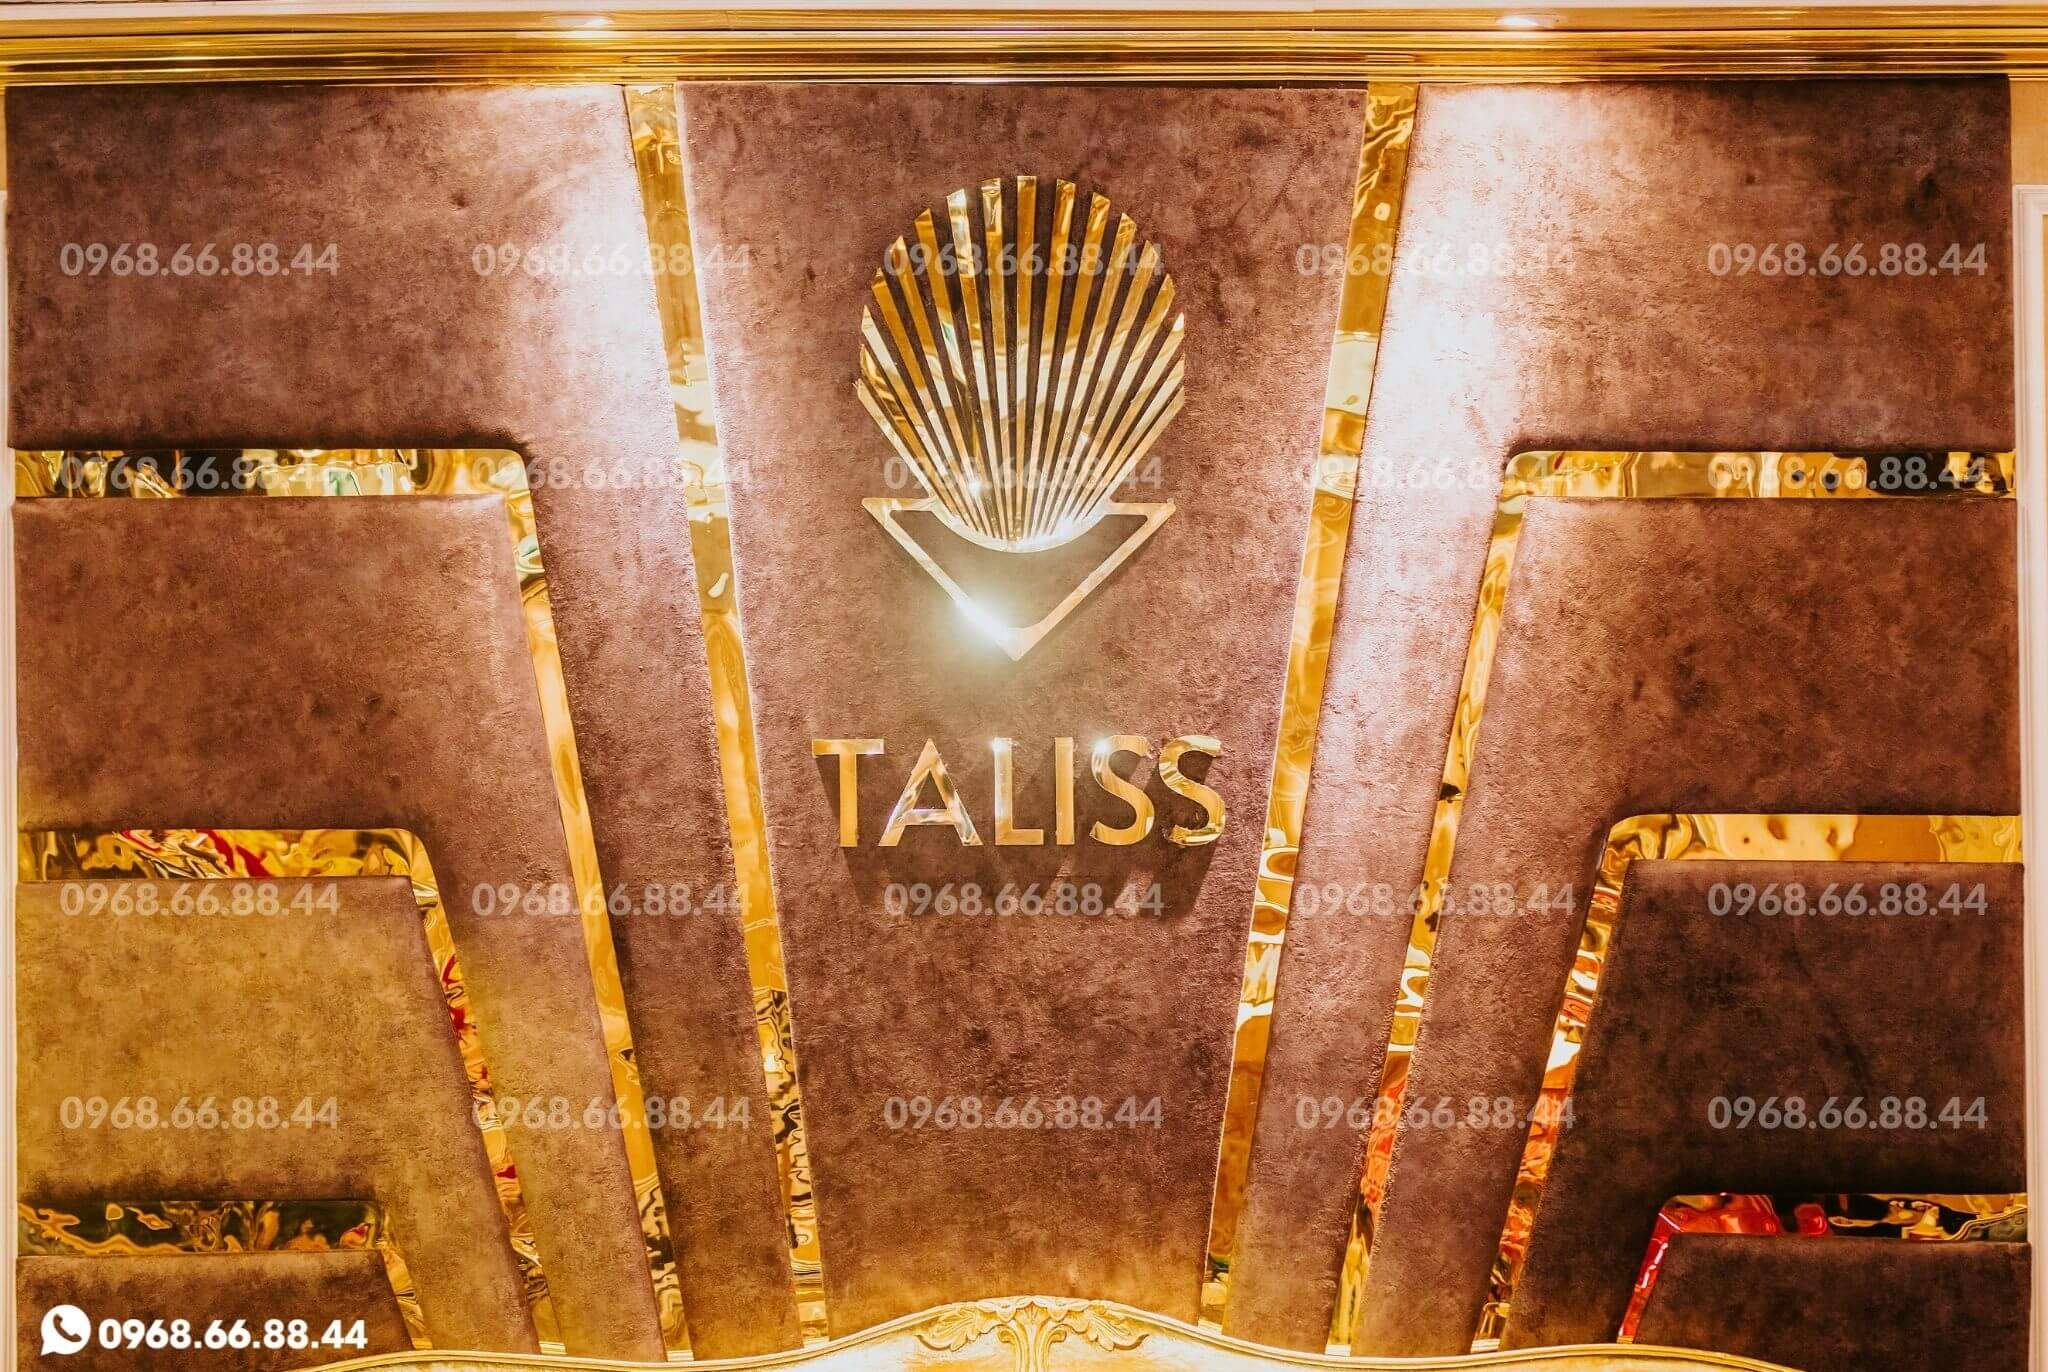 Karaoke Taliss - 60 Phù Đổng Thiên Vương